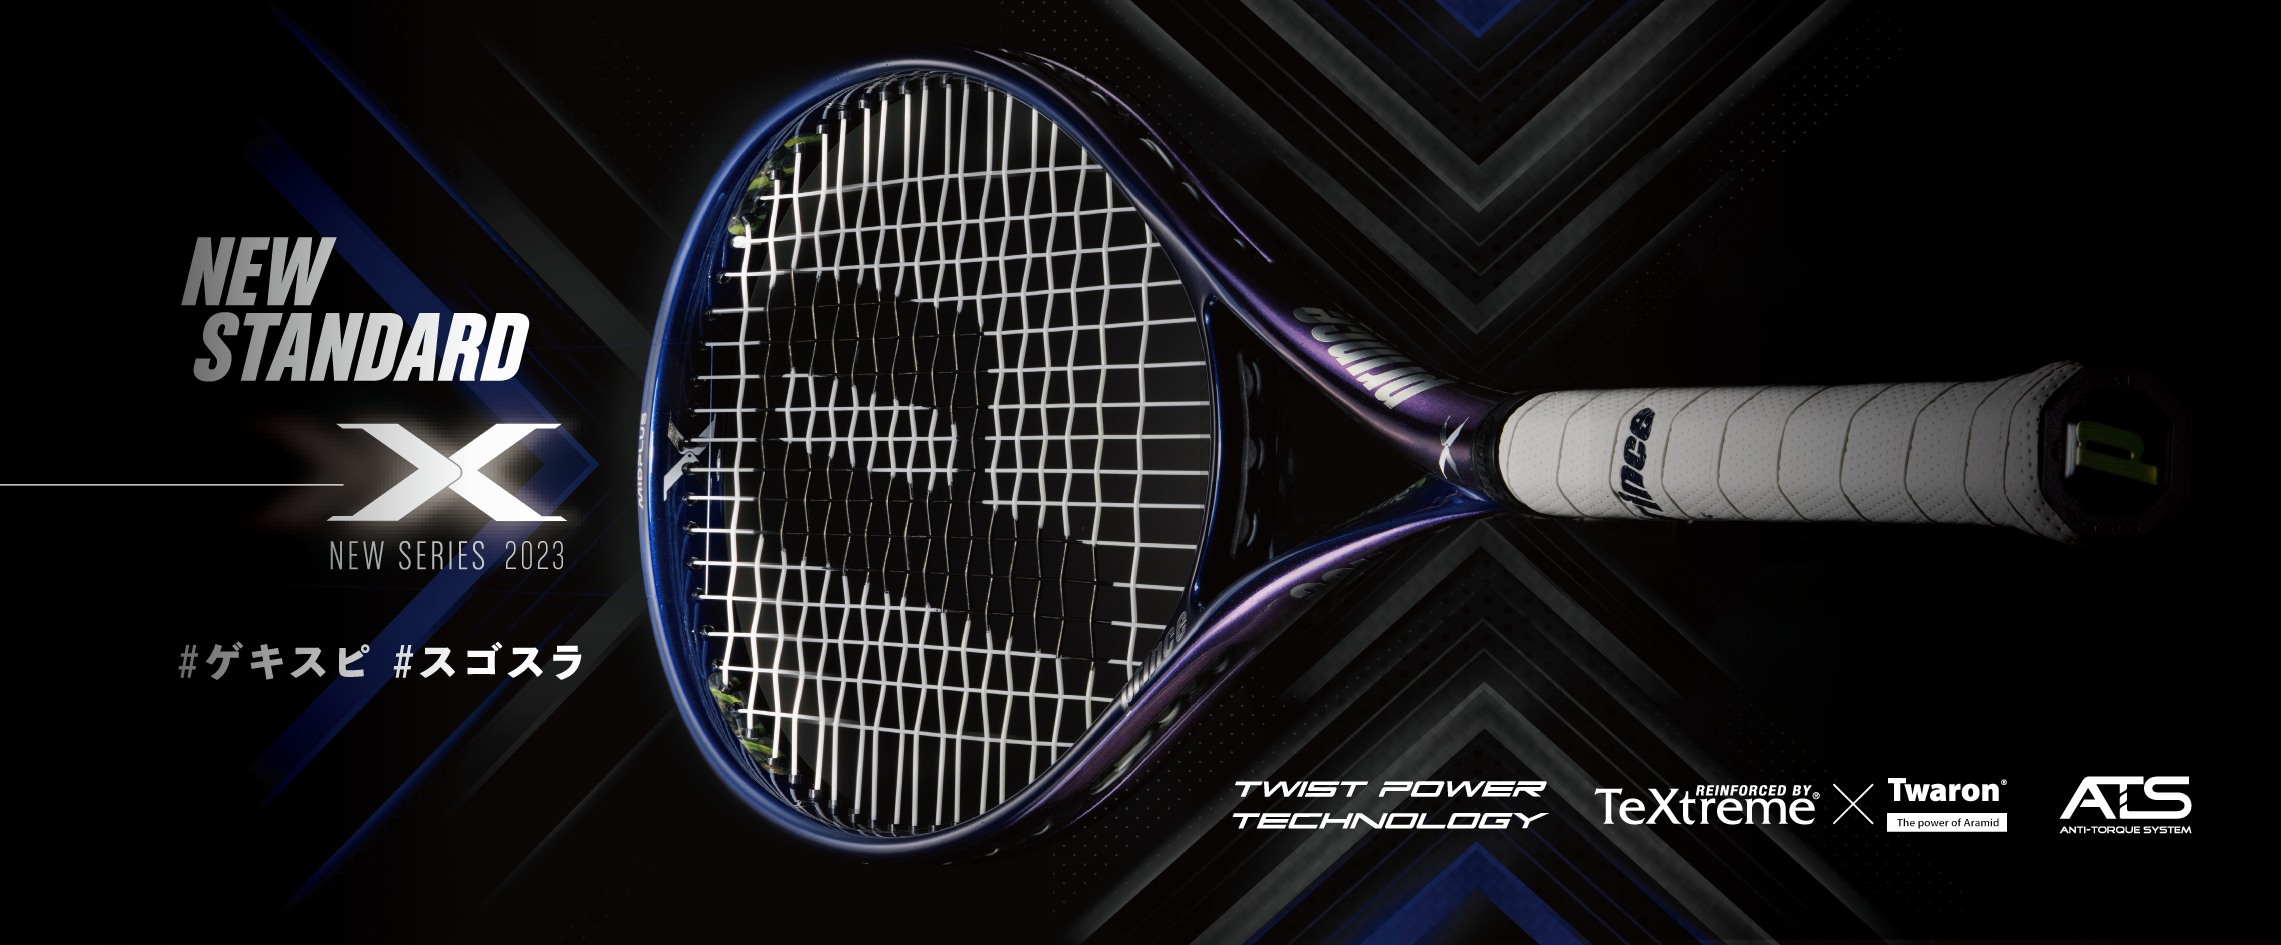 テニスラケット - Prince プリンステニス公式サイト